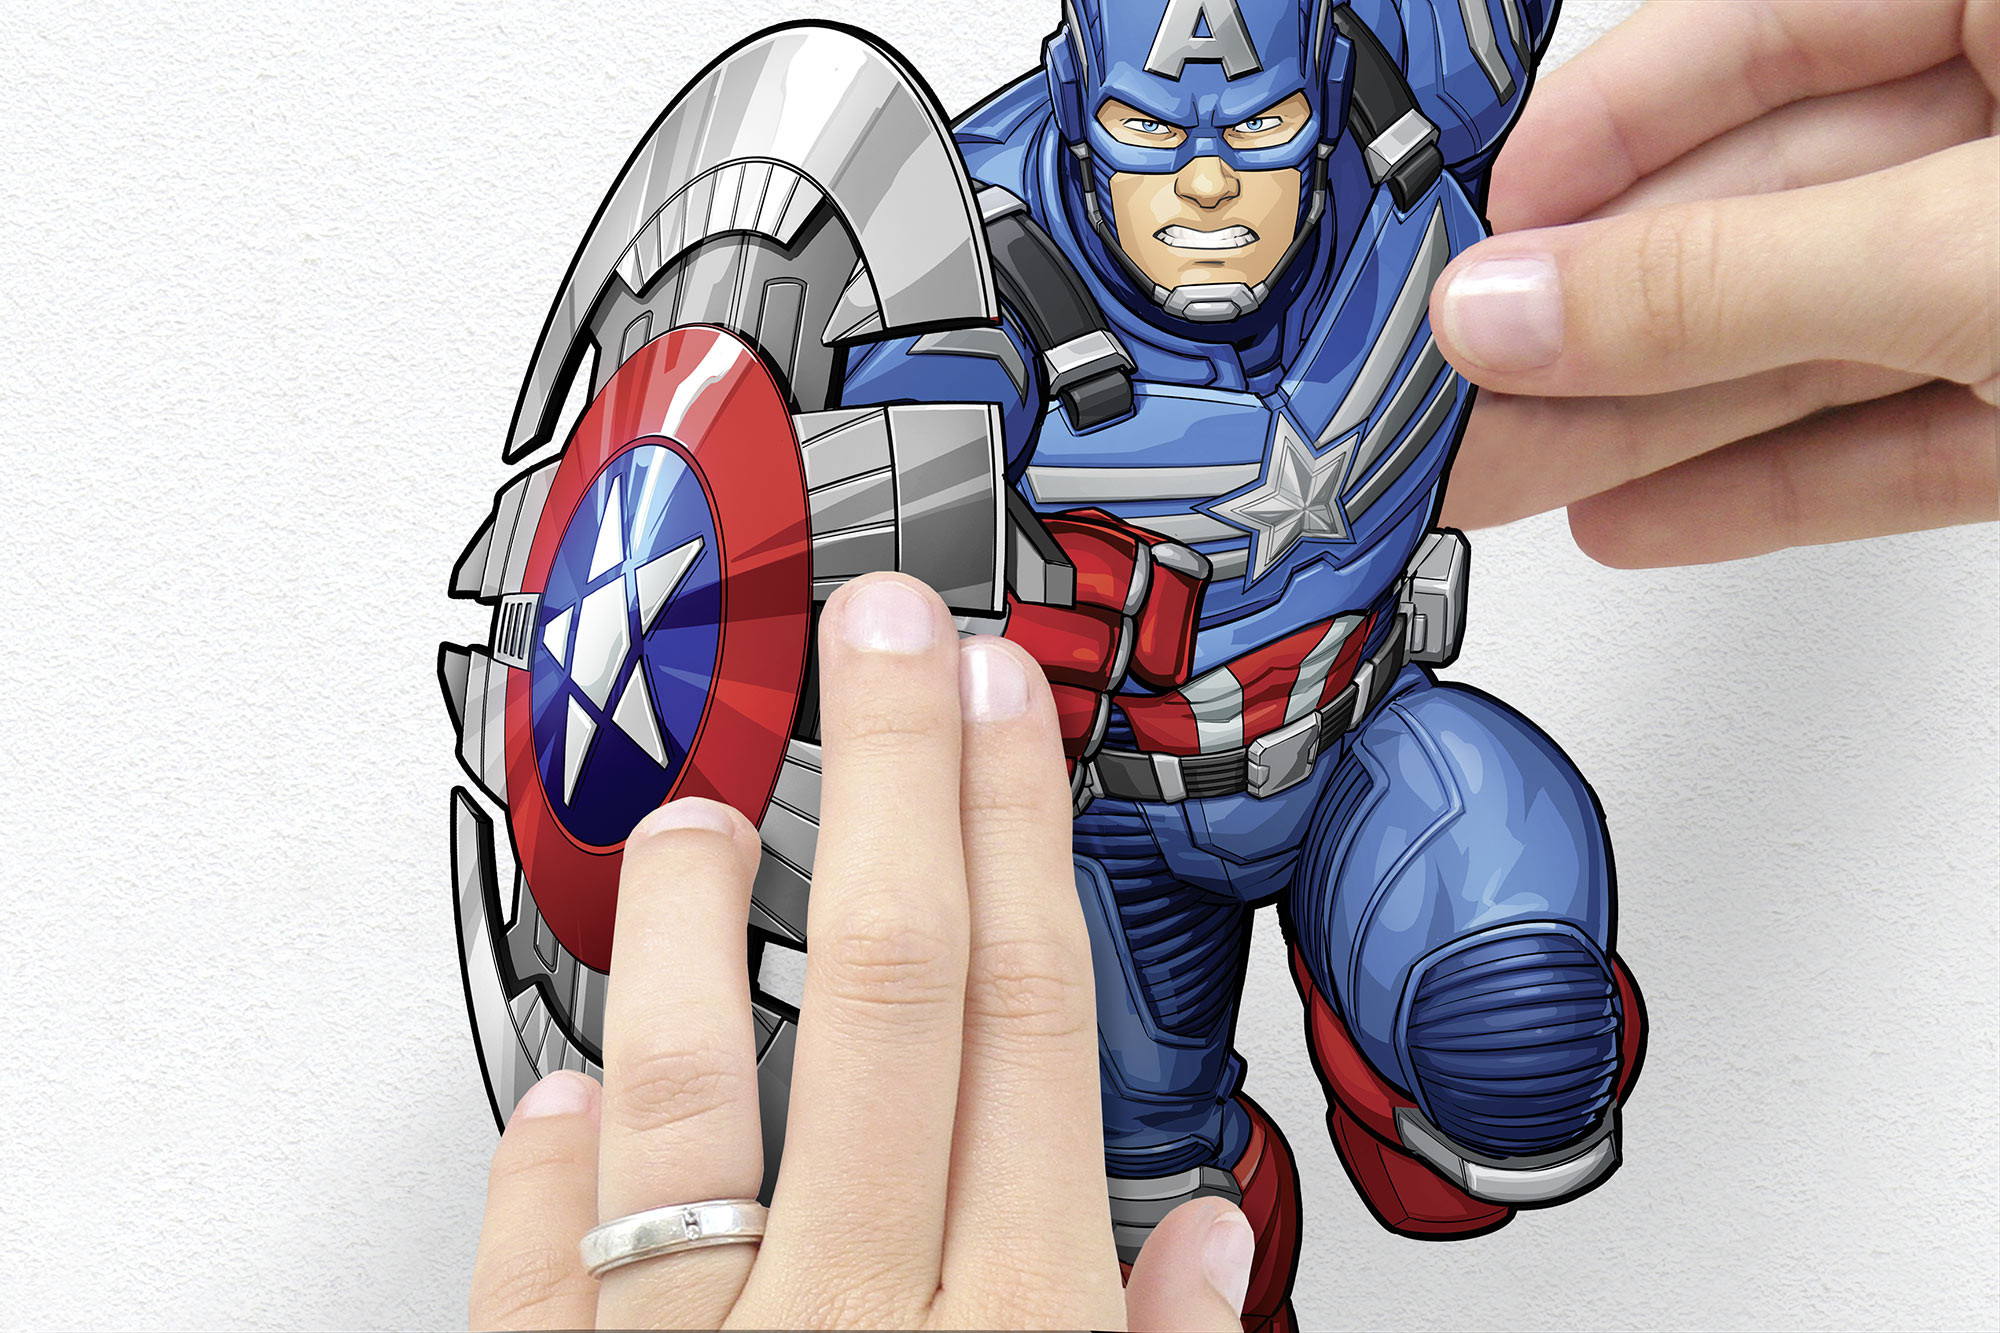 Sticker mural Avengers Plates de Komar®, Marvel